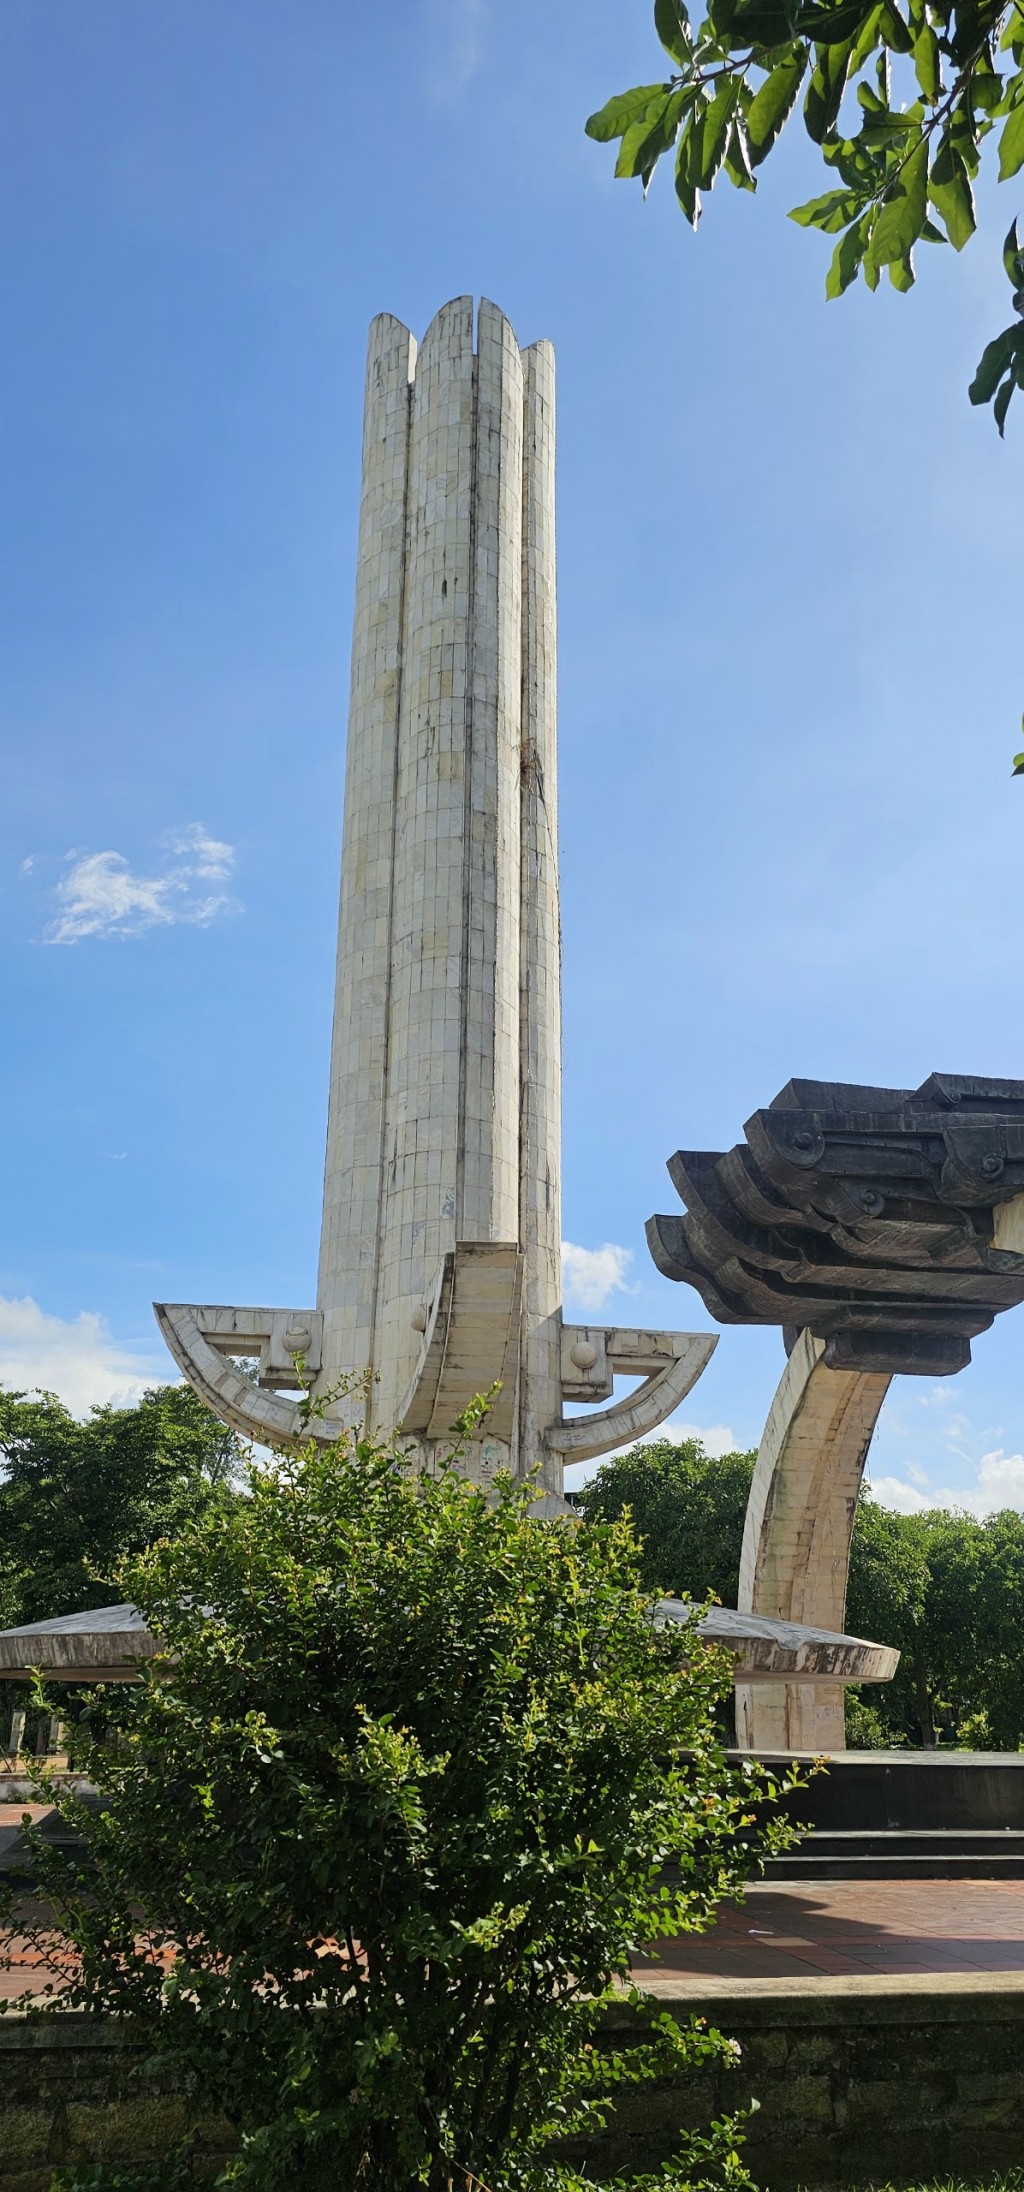 Quảng Nam: Đề xuất nâng cấp Tượng đài Dũng sĩ Điện Ngọc